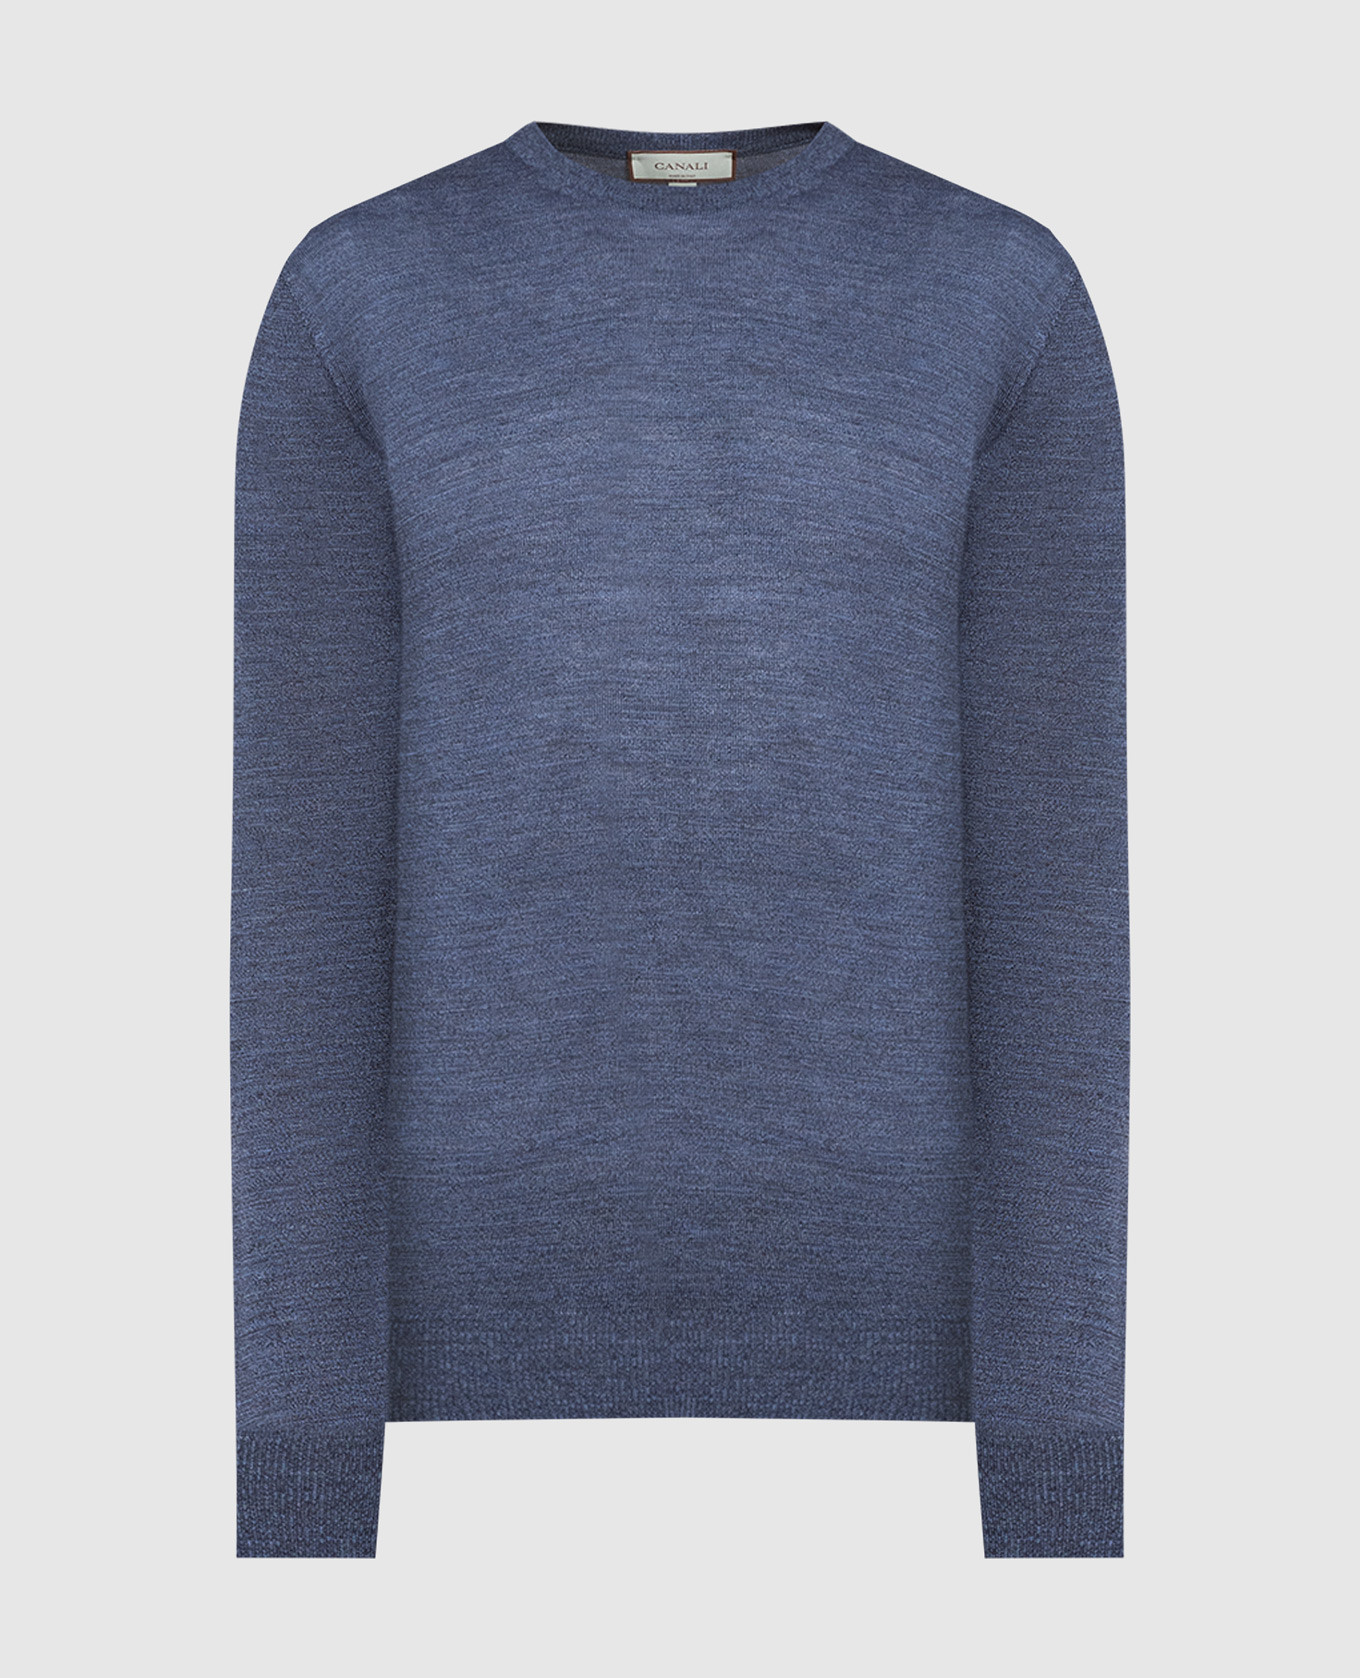 Blue woolen jumper